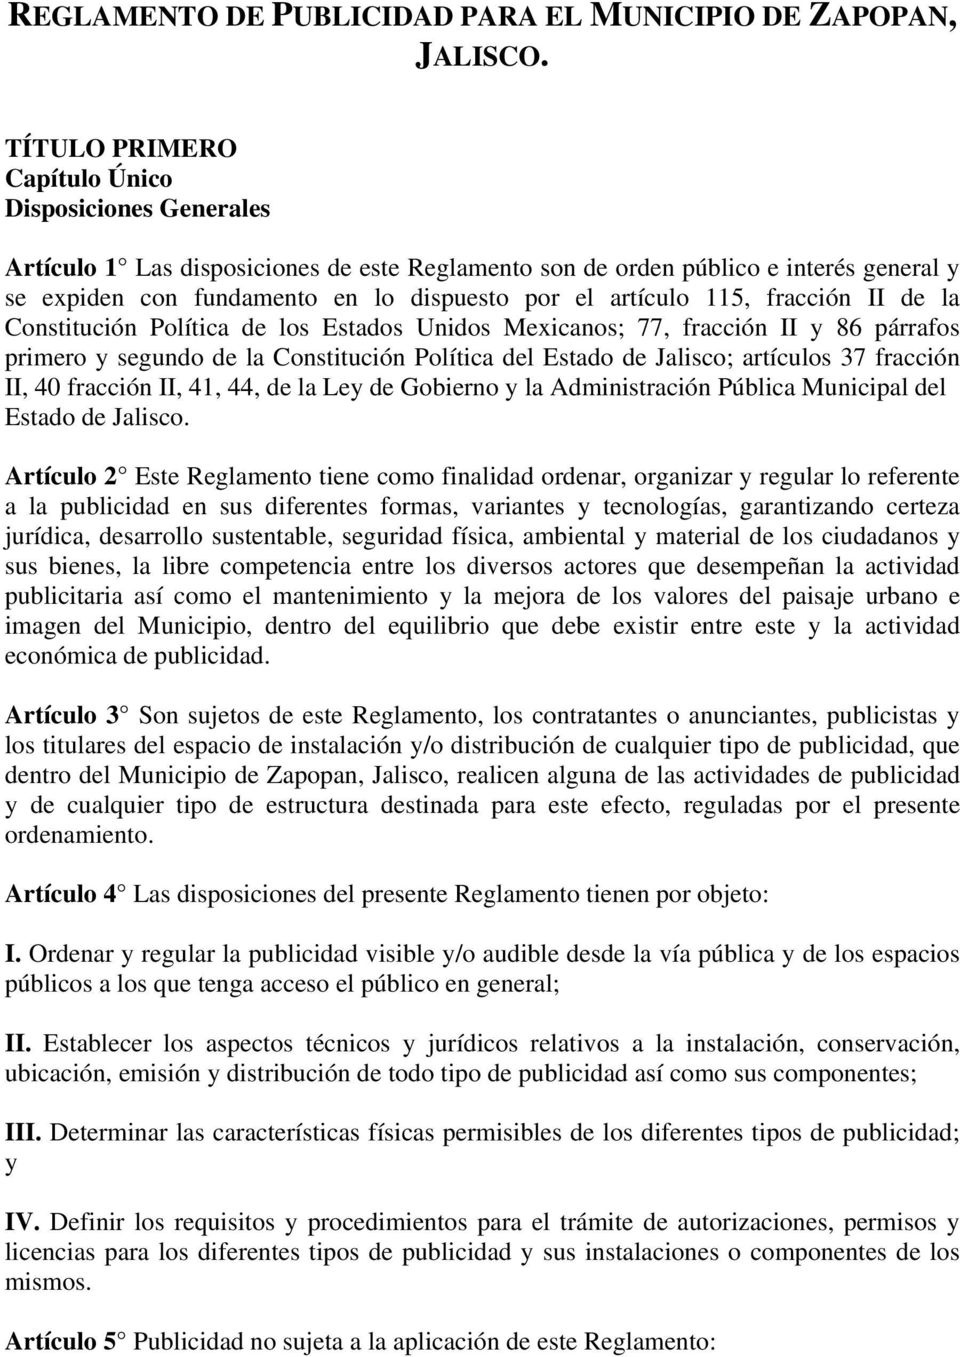 artículo 115, fracción II de la Constitución Política de los Estados Unidos Mexicanos; 77, fracción II y 86 párrafos primero y segundo de la Constitución Política del Estado de Jalisco; artículos 37